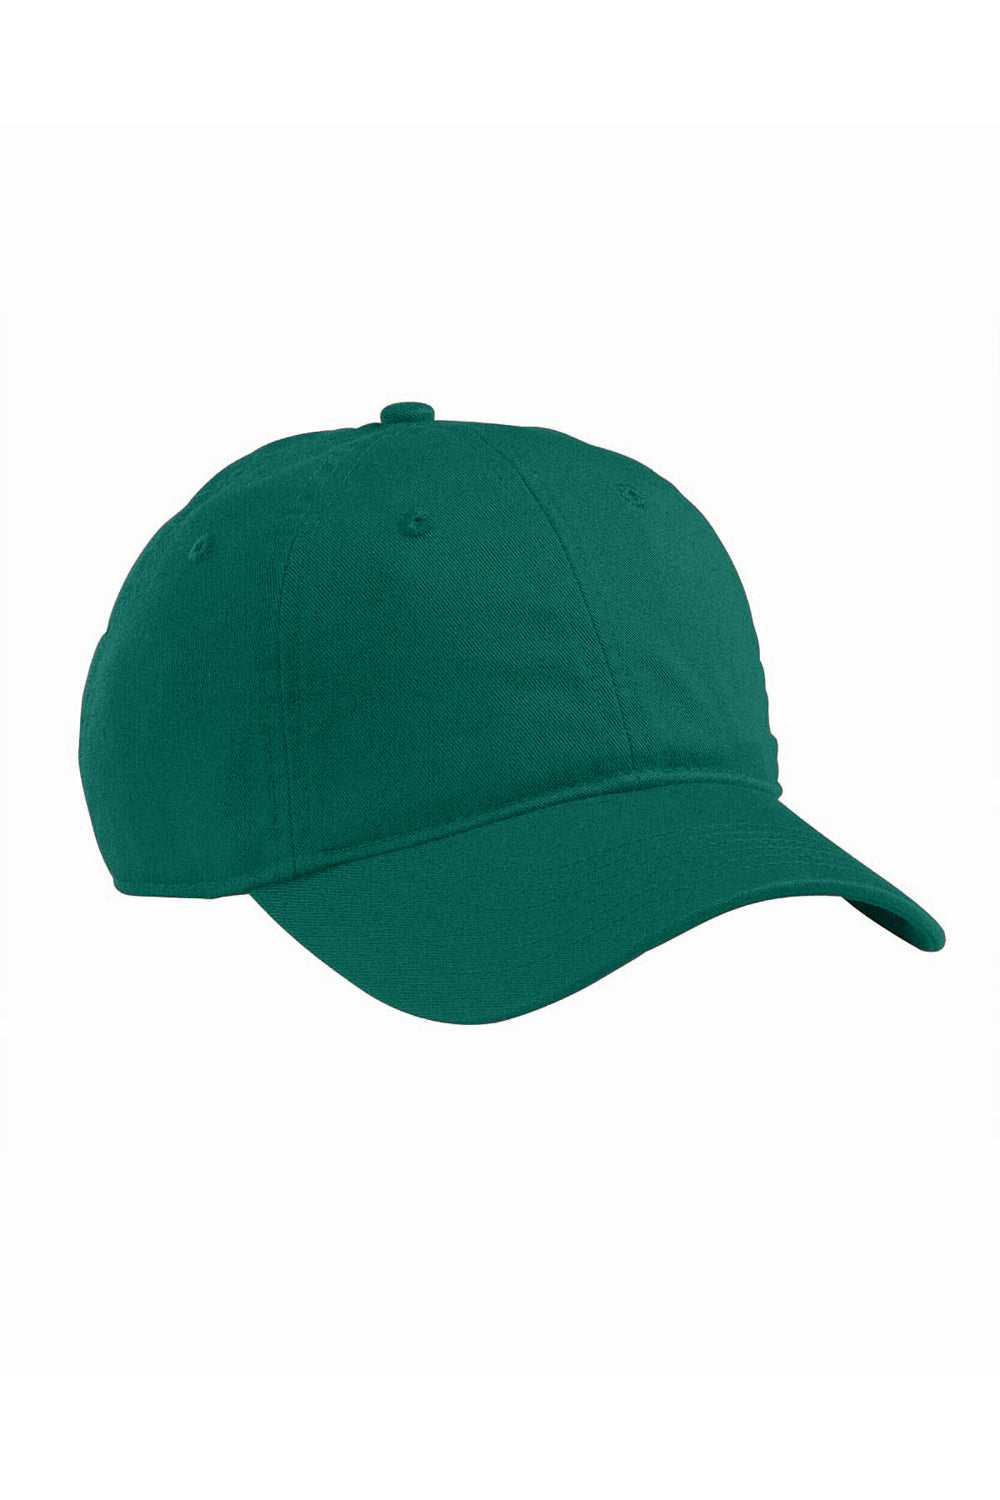 Econscious EC7000 Mens Adjustable Hat Green Front